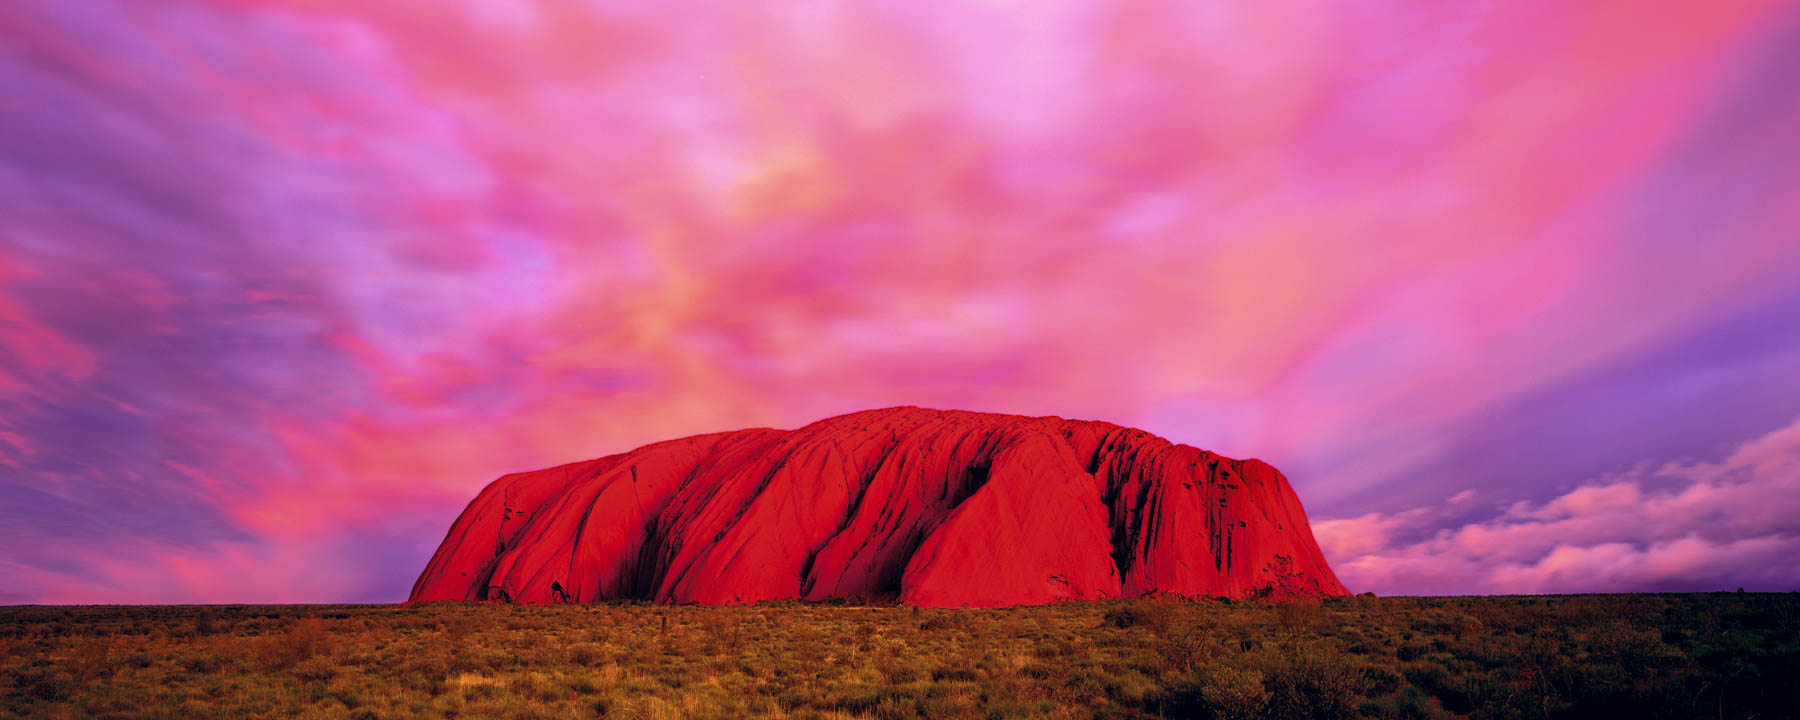 Ulurua ved solnedgang, med lyserøde og lilla skyer som den lyse røde klippe